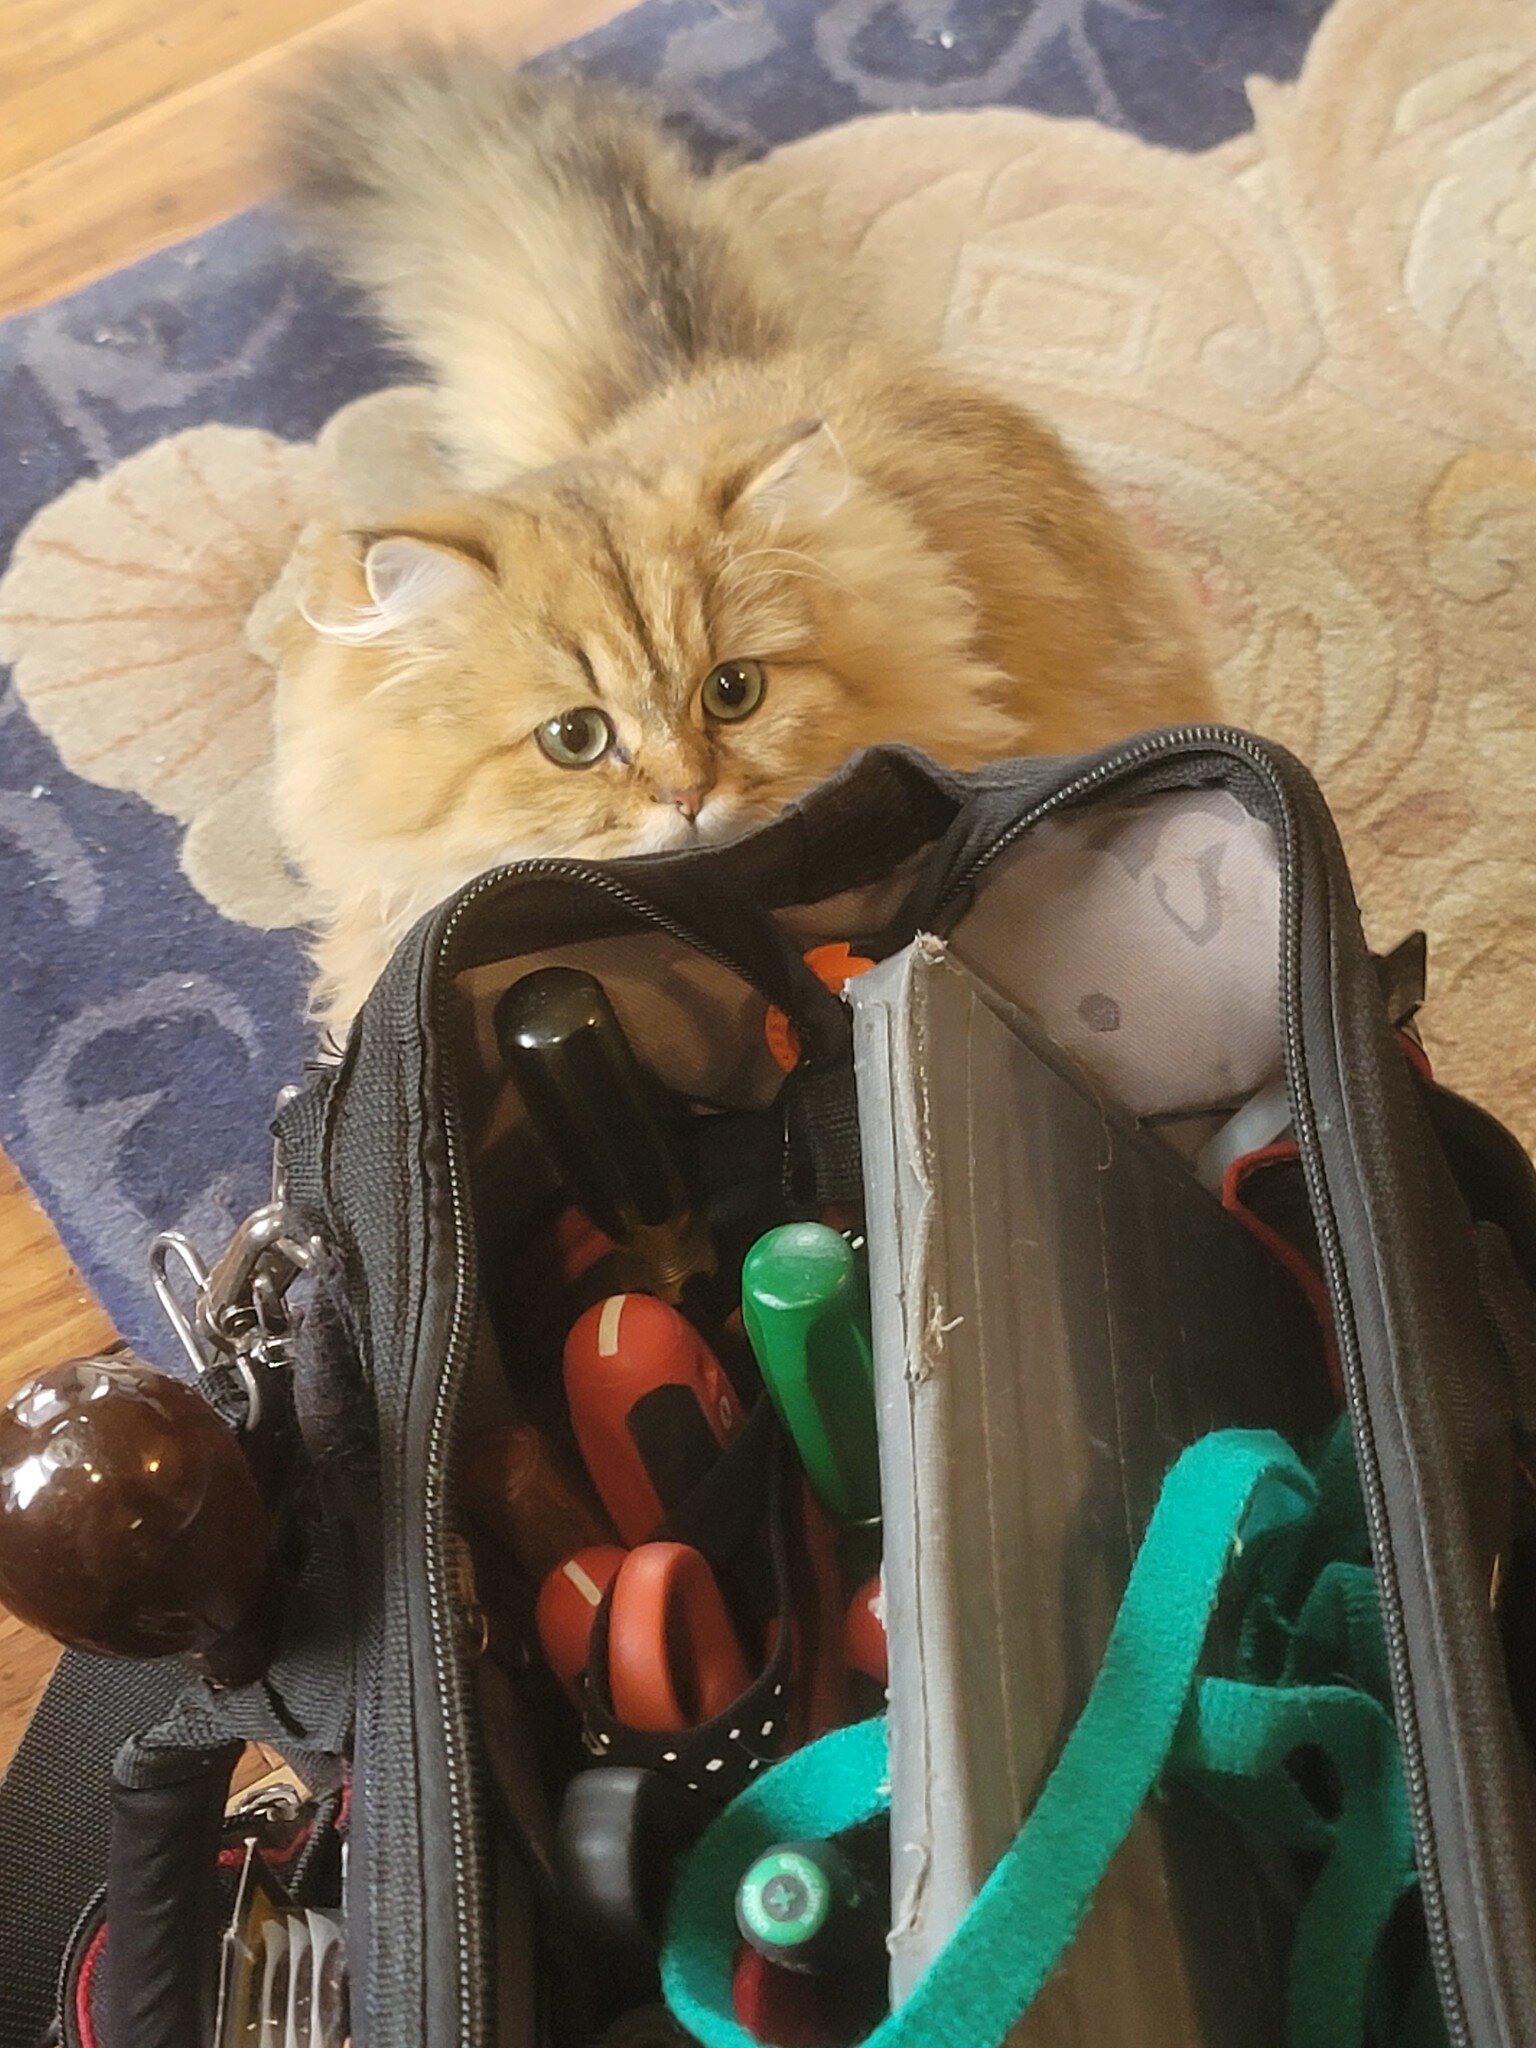 Alisa checks my bags